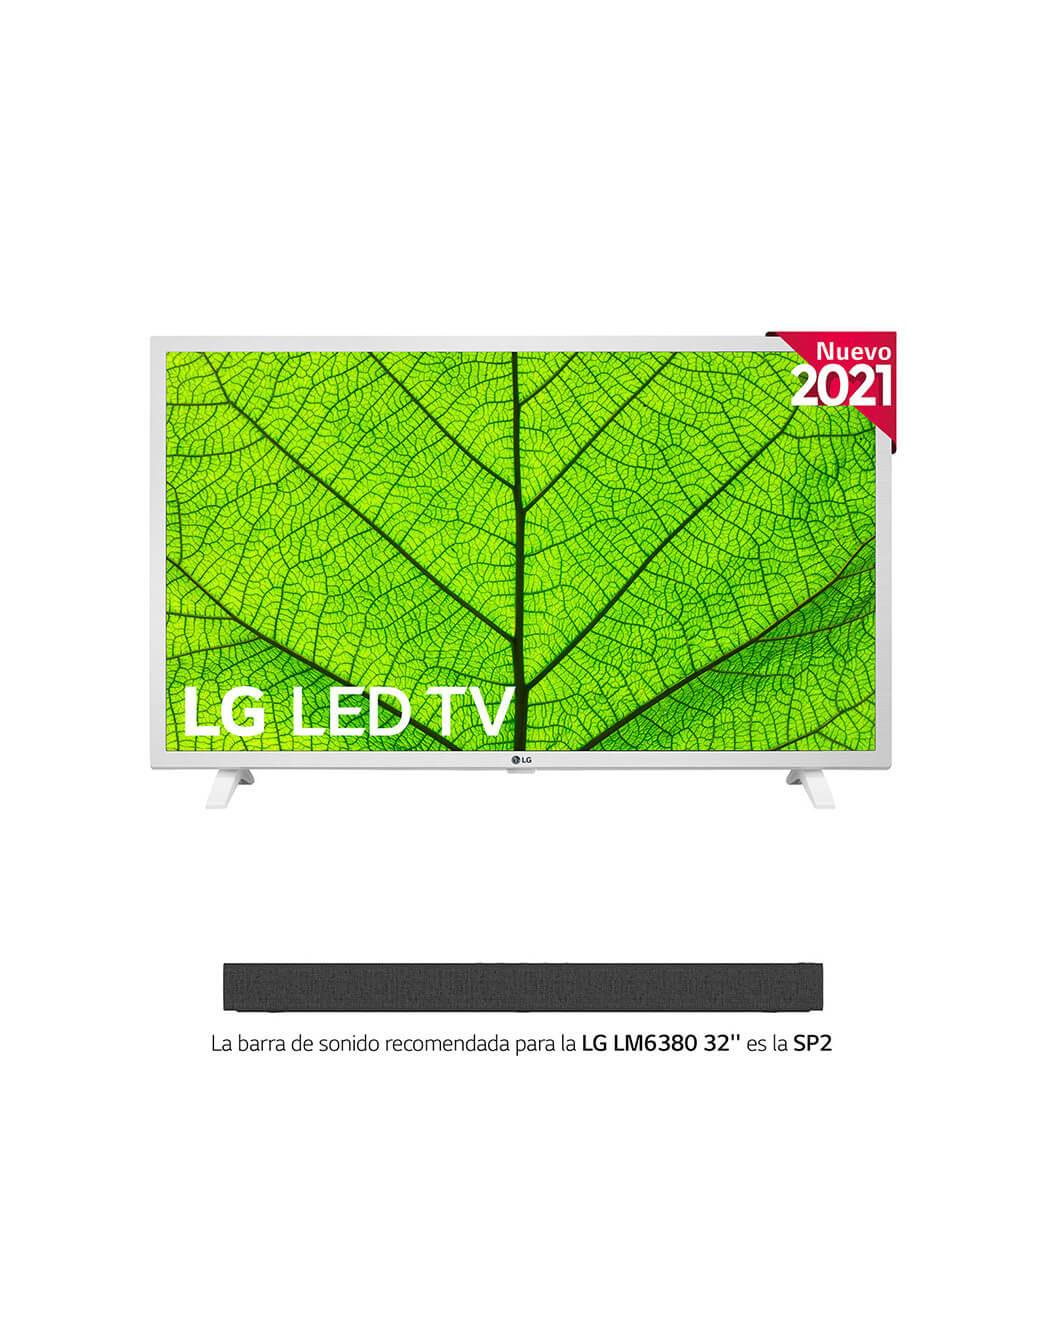 Smart Tv LG 32 Pulgadas 32LM620 HD WebOS - Otero Hogar: Tienda de  Electrodomésticos, Tecnología y Artículos para el Hogar